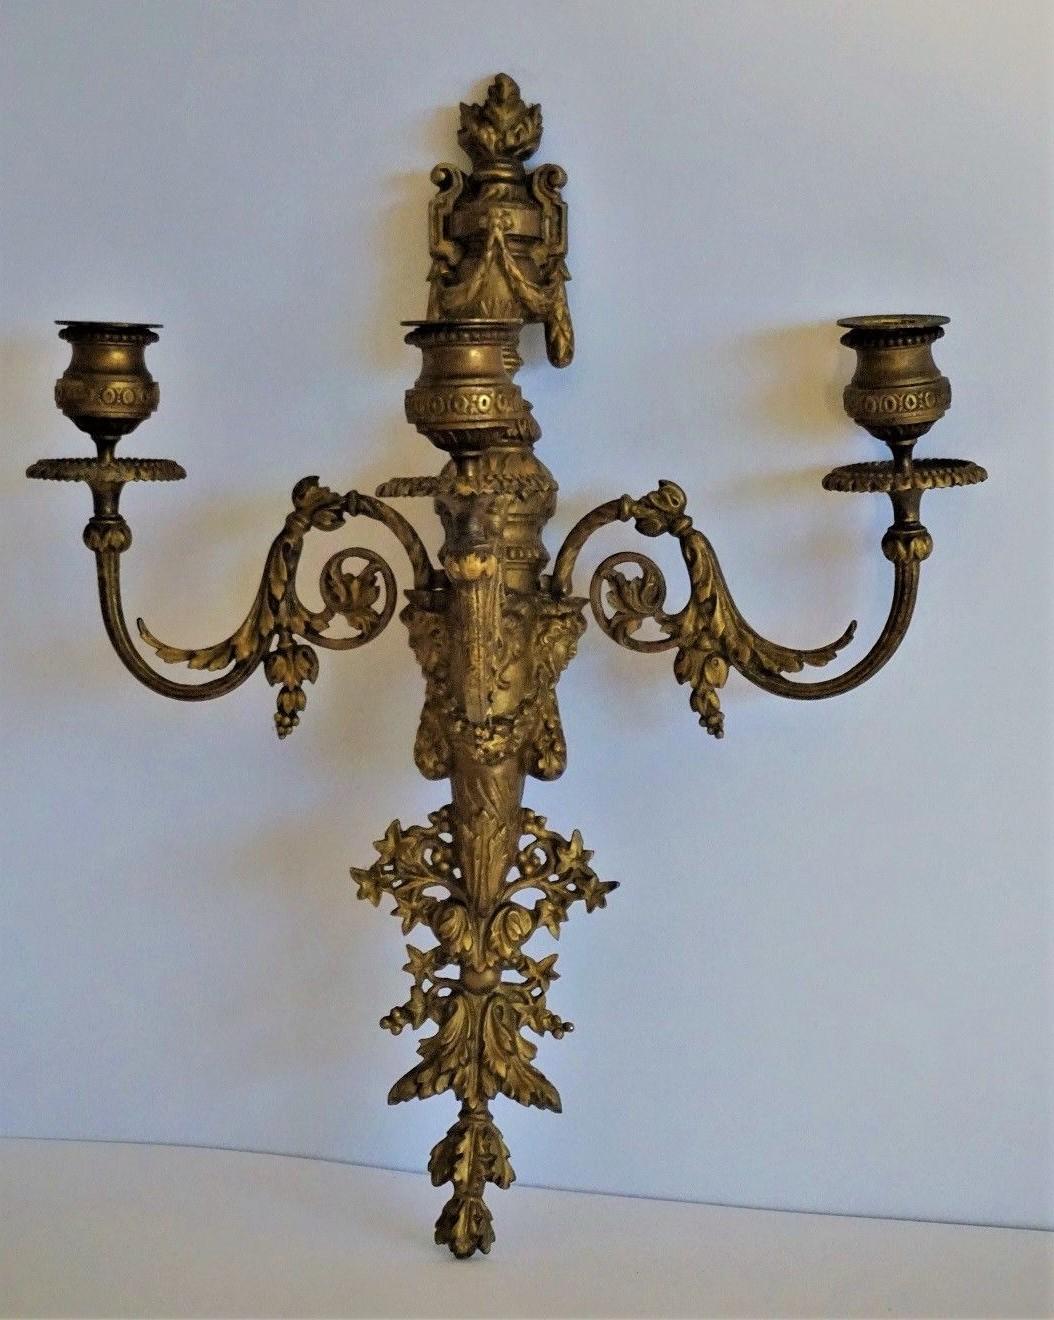 Vergoldeter dreiarmiger Wandkerzenhalter aus französischer Empire-Bronze, fein verziert mit Blattwerk, Eichelmotiven und drei Frauengesichtern, um 1850-1870.
Dieser Wandkandelaber kann leicht in einen elektrischen umgewandelt werden. In gutem